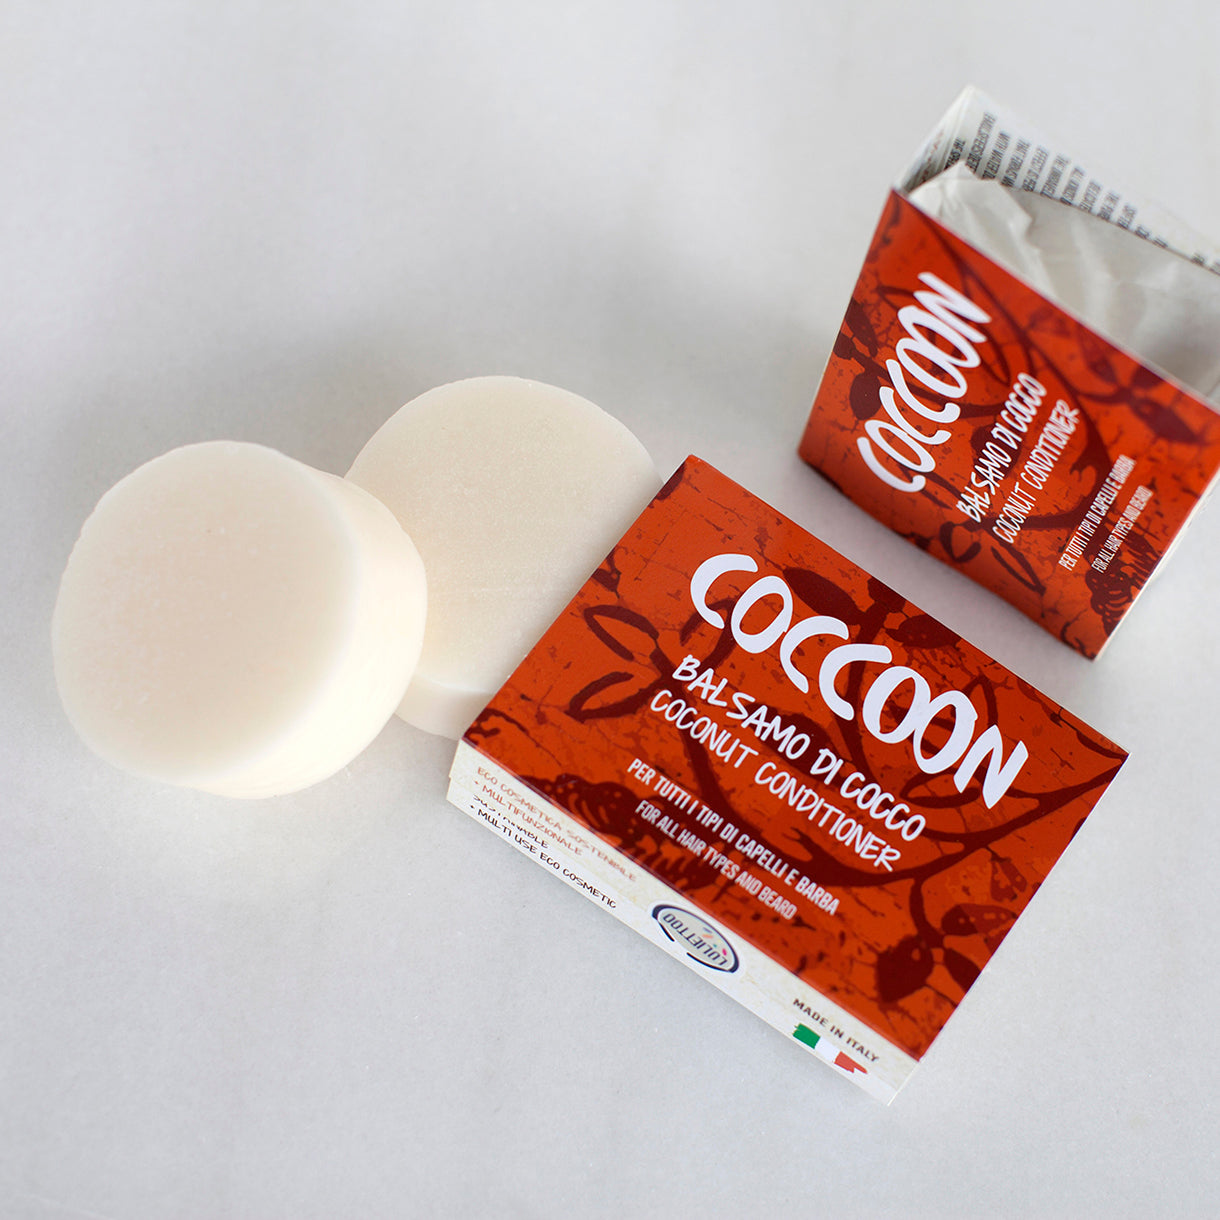 Confezioni di balsamo solido Coccoon con panetti nudi